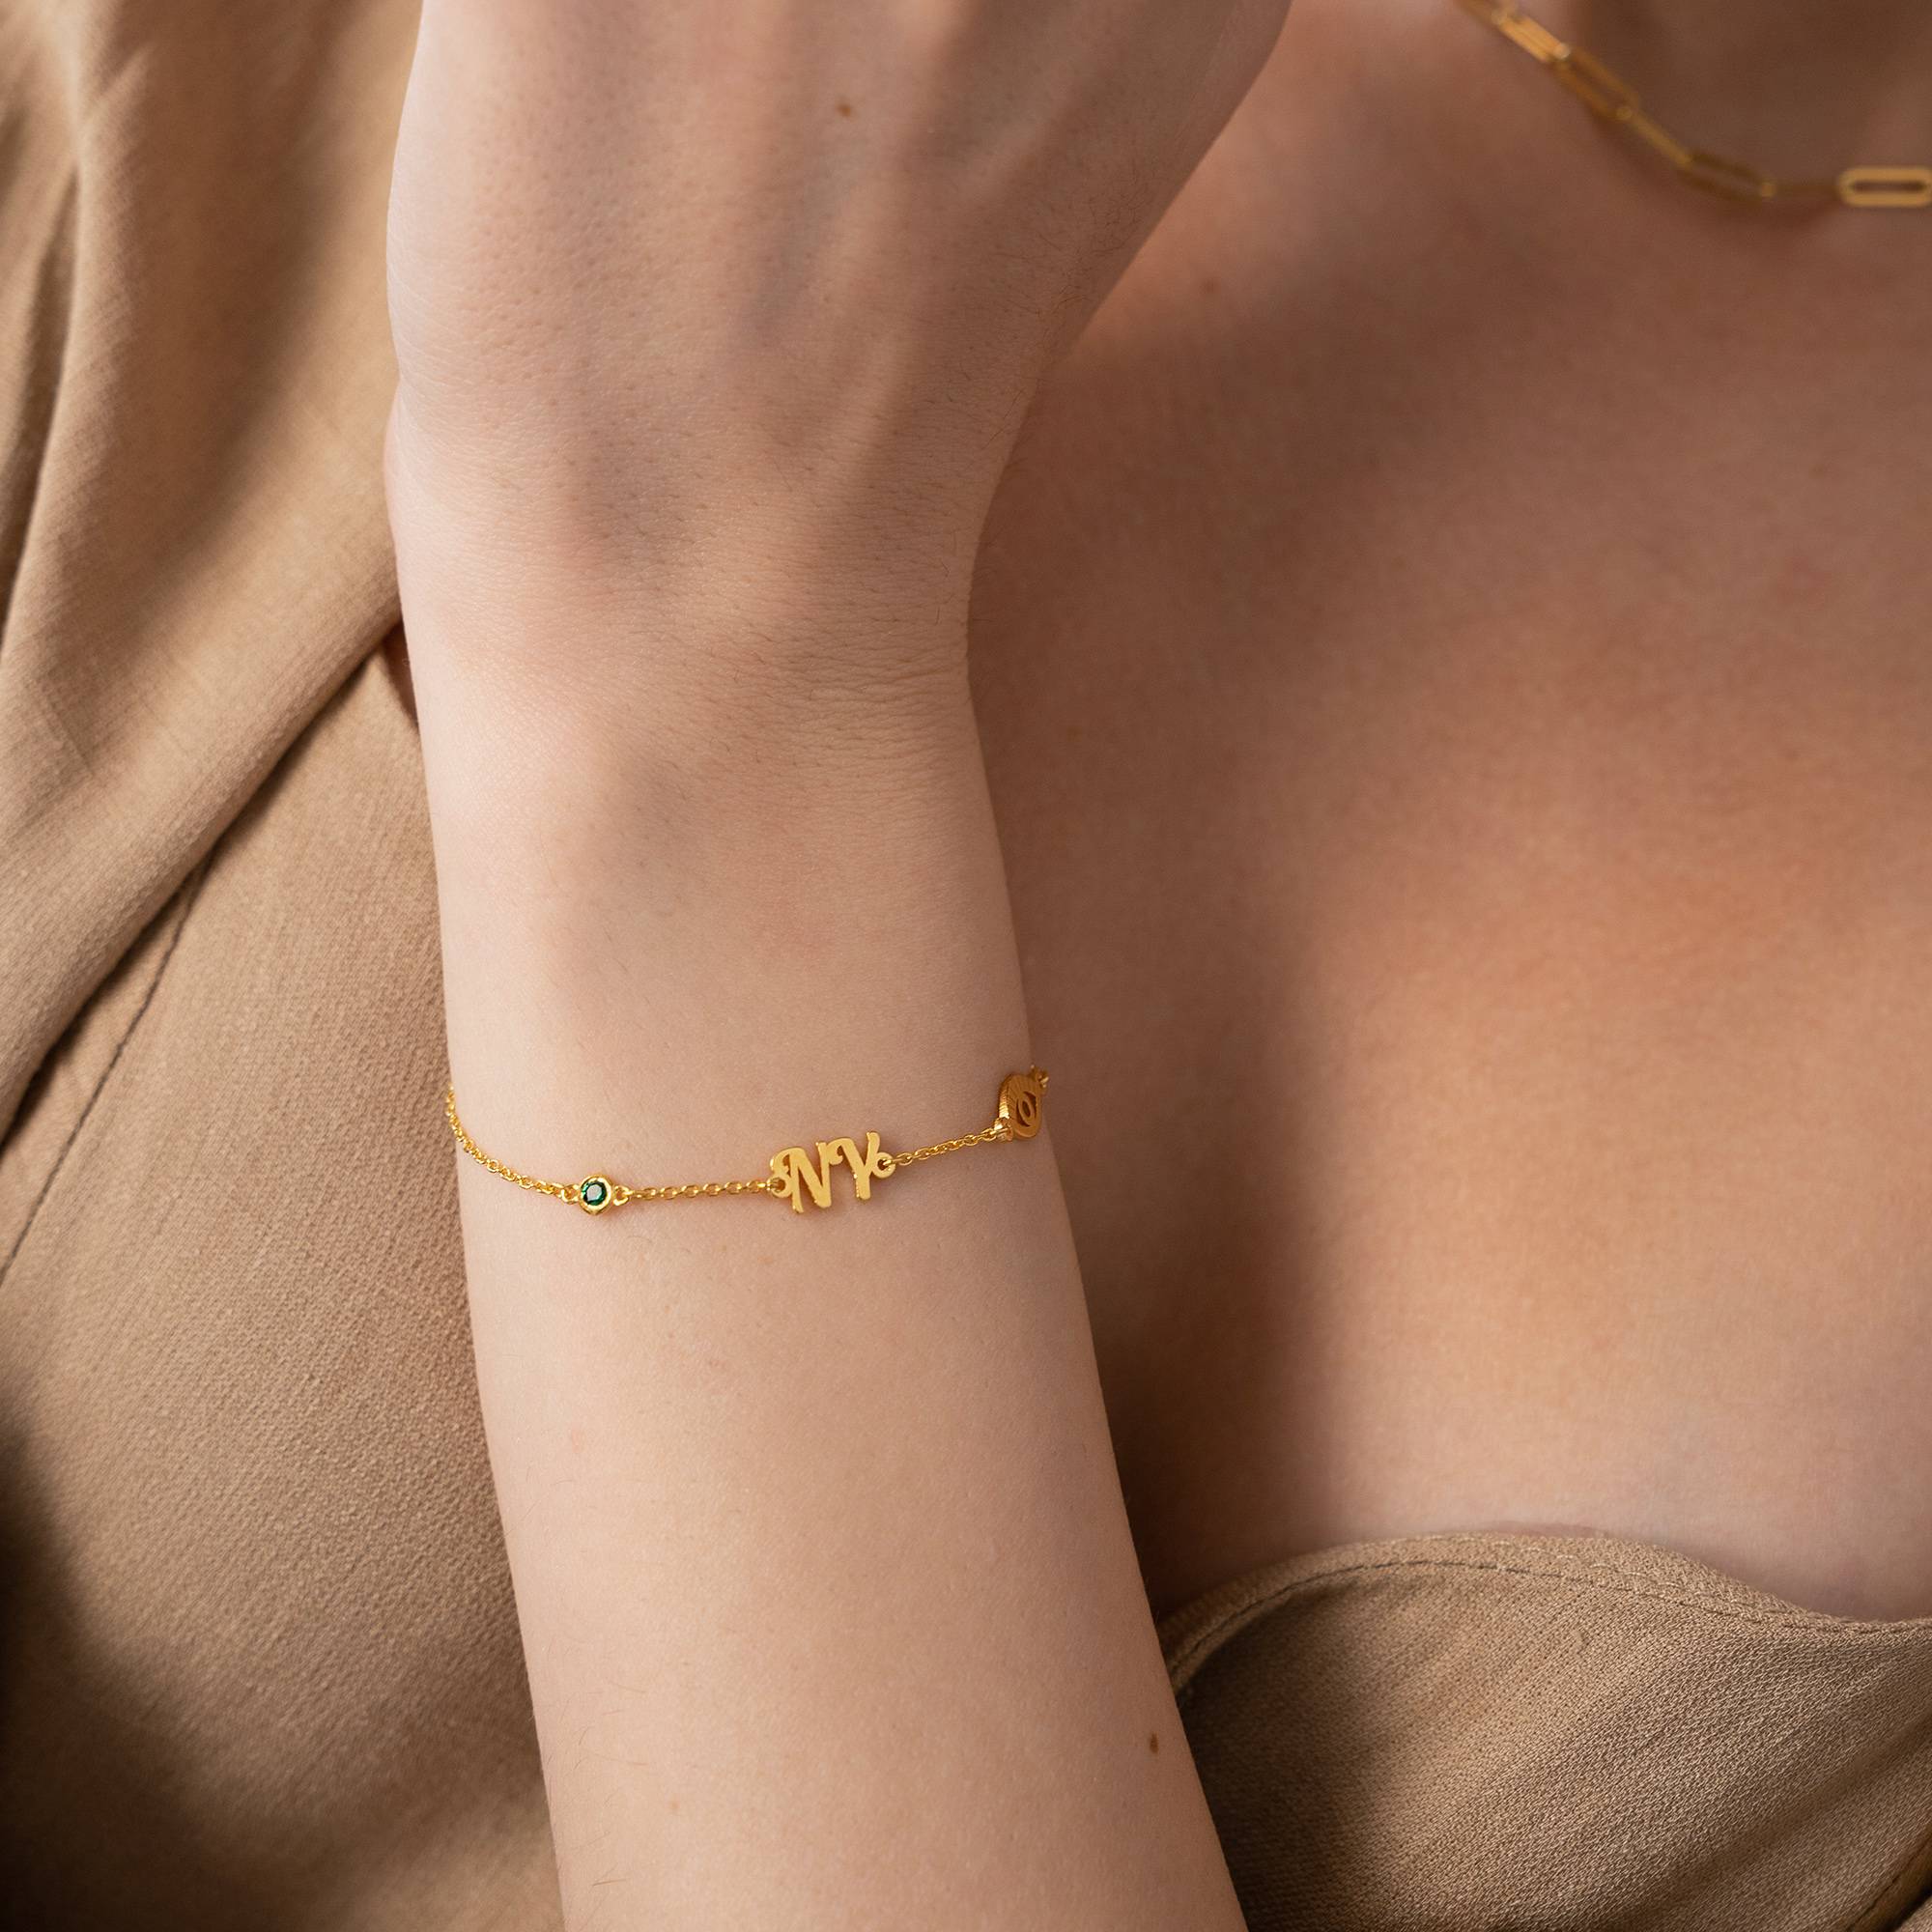 Bridget Boze Oog Initiaal Armband/Enkelbandje met Edelsteen in 18k Goud Vermeil-4 Productfoto